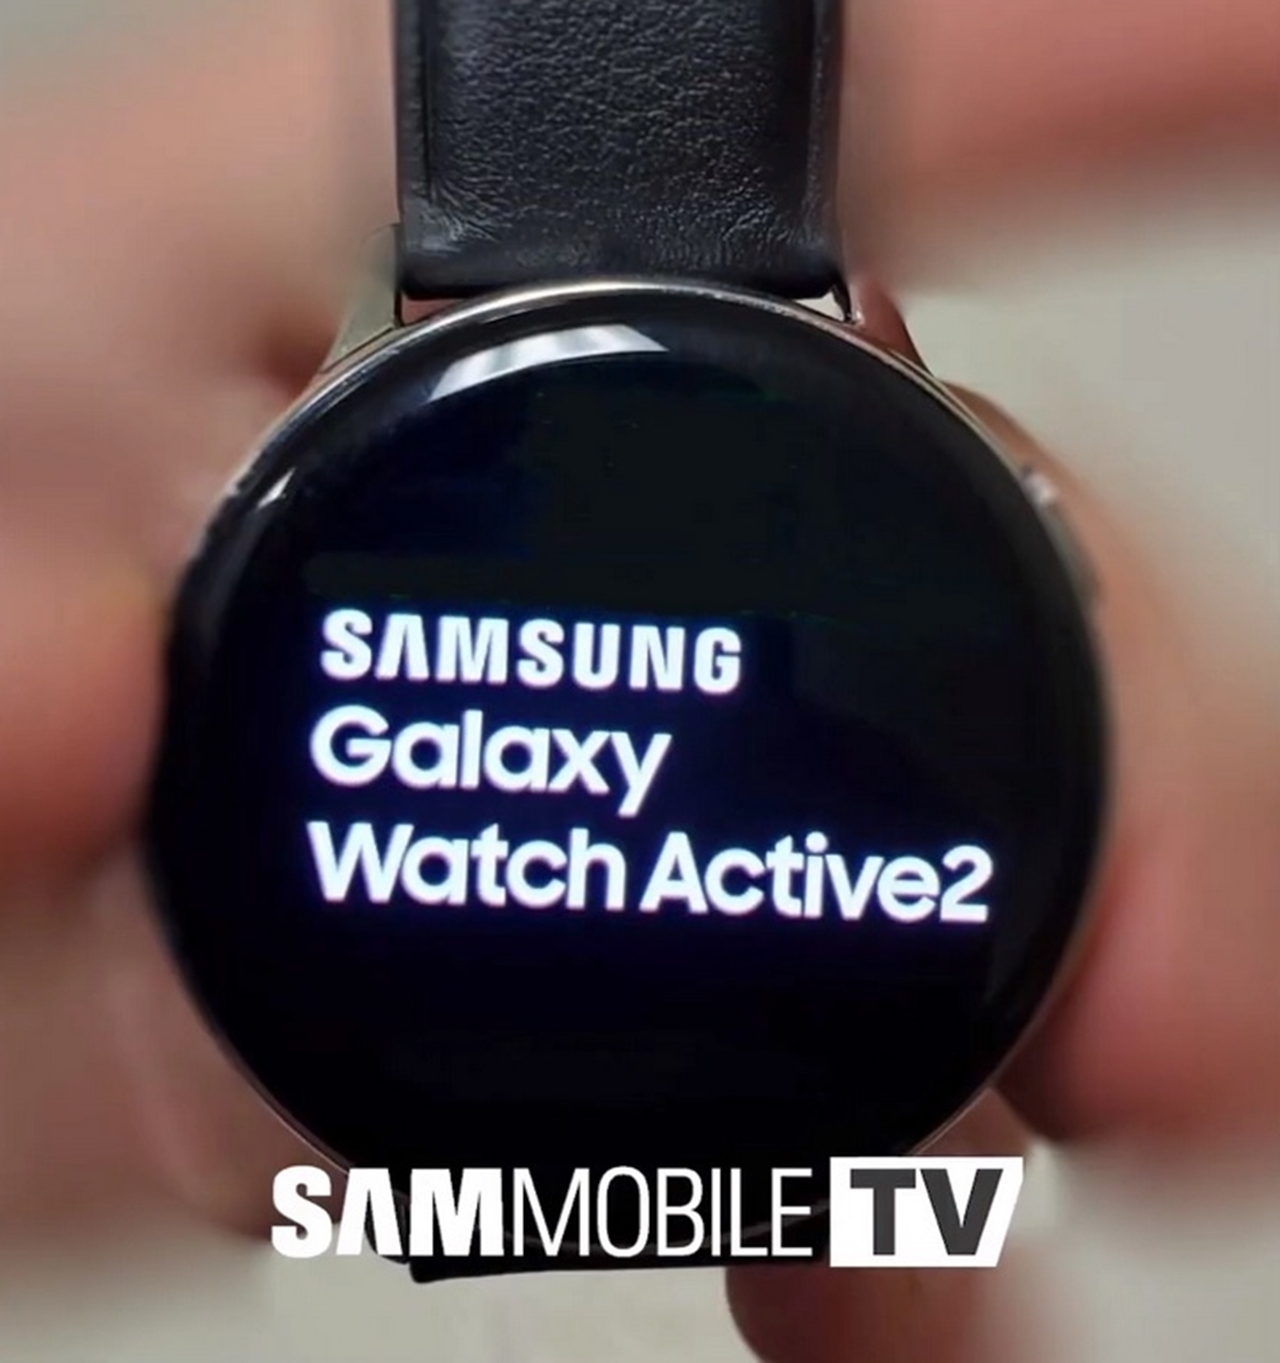 Samsung Galaxy Watch Active 2 özellikleri